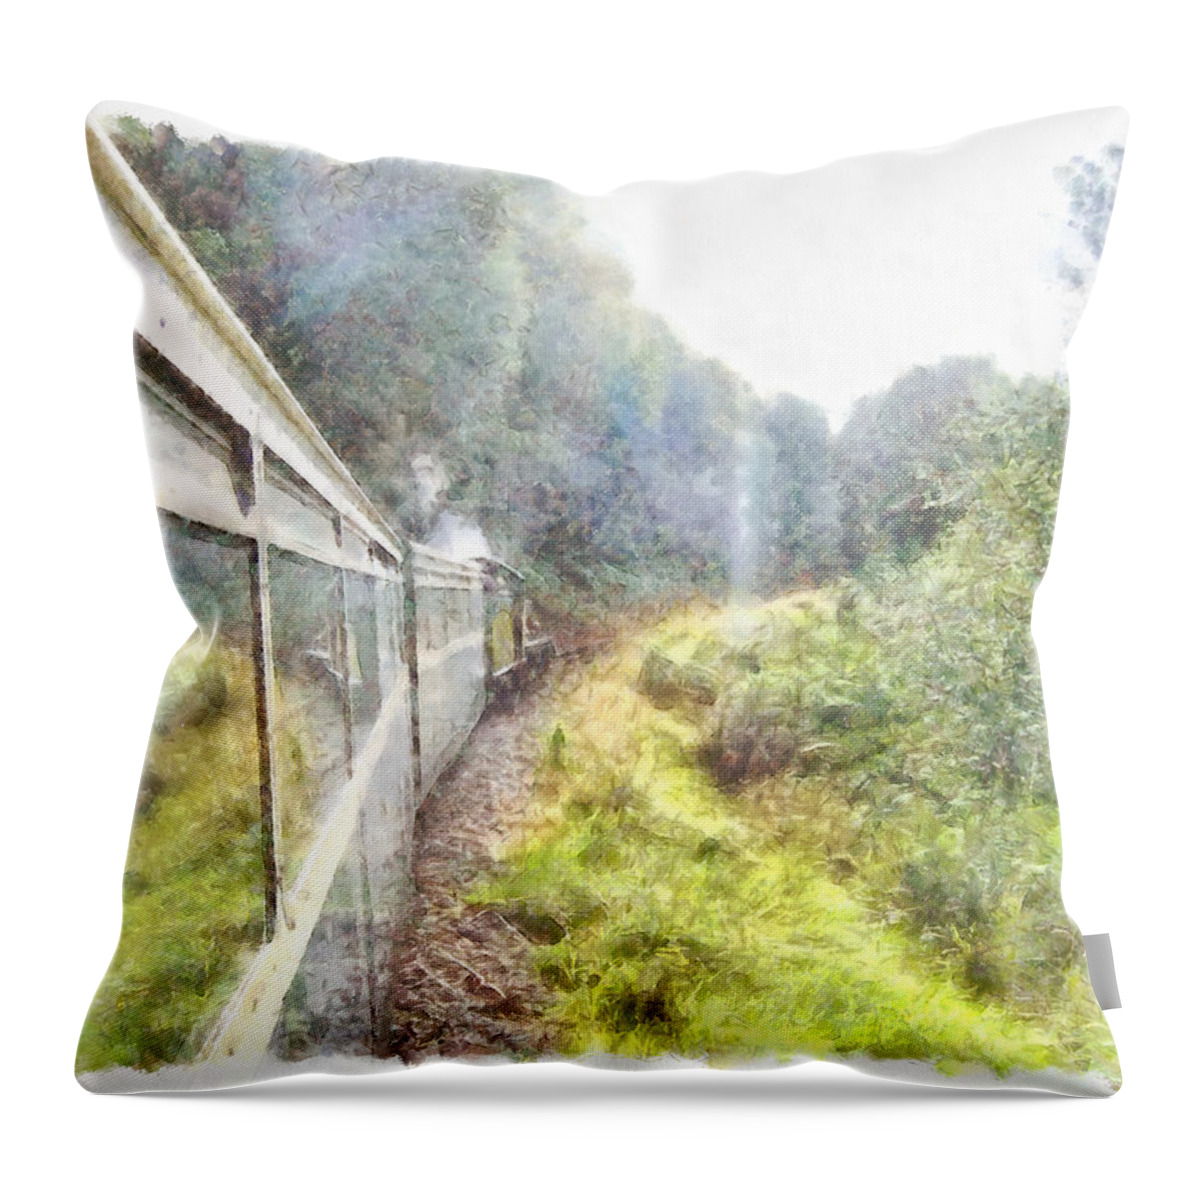 Train Throw Pillow featuring the photograph Train heading through greenery by Ashish Agarwal